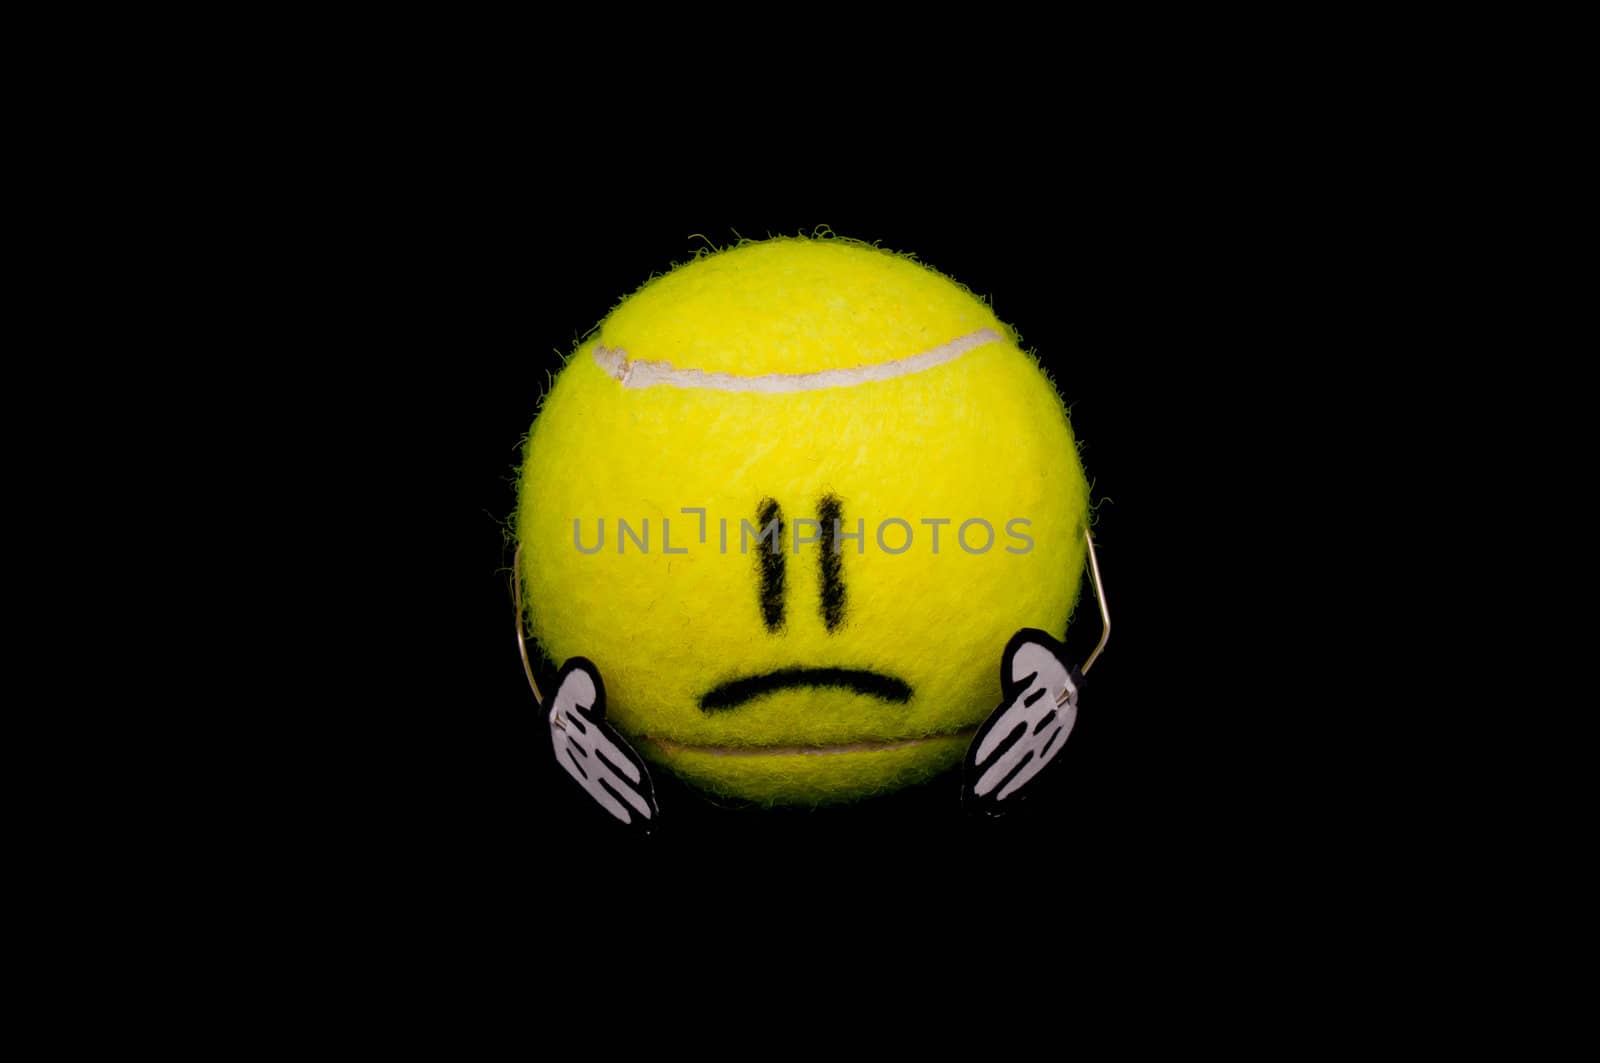 Cute ball is sad by dmitryelagin